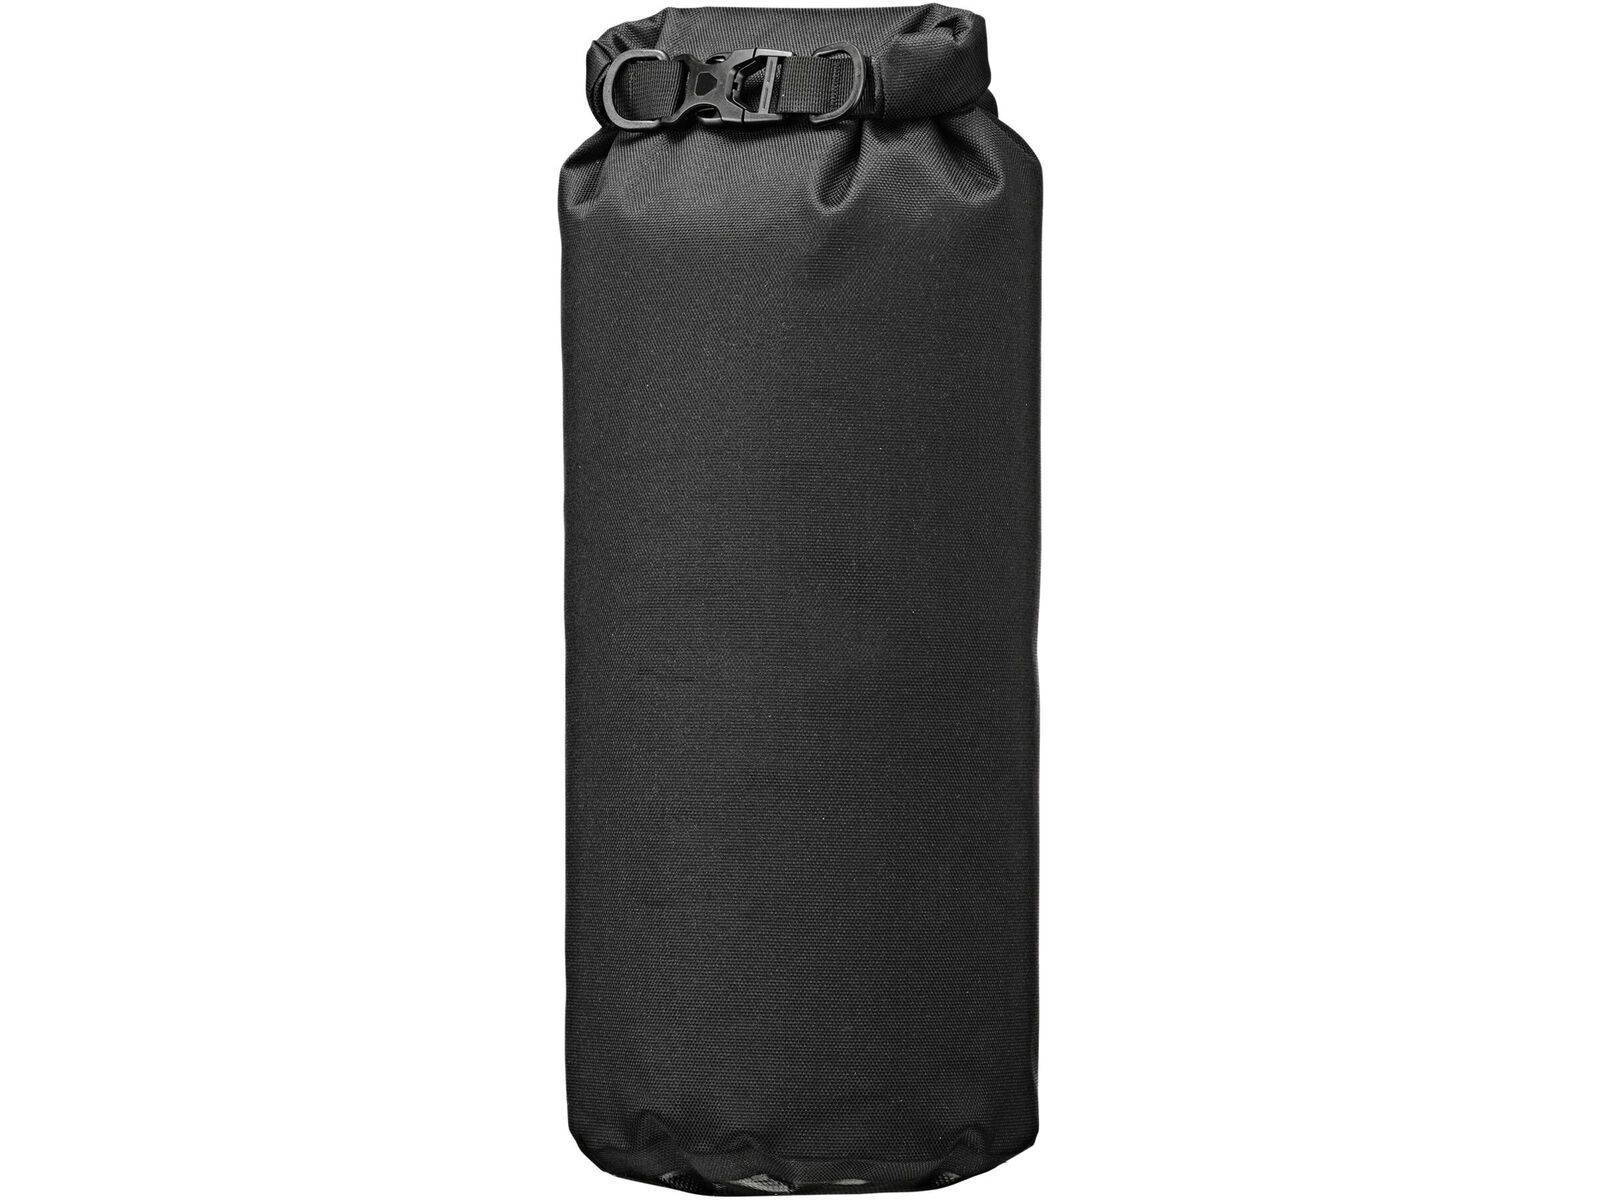 ORTLIEB Dry-Bag PS490 35 L, black-grey | Bild 2